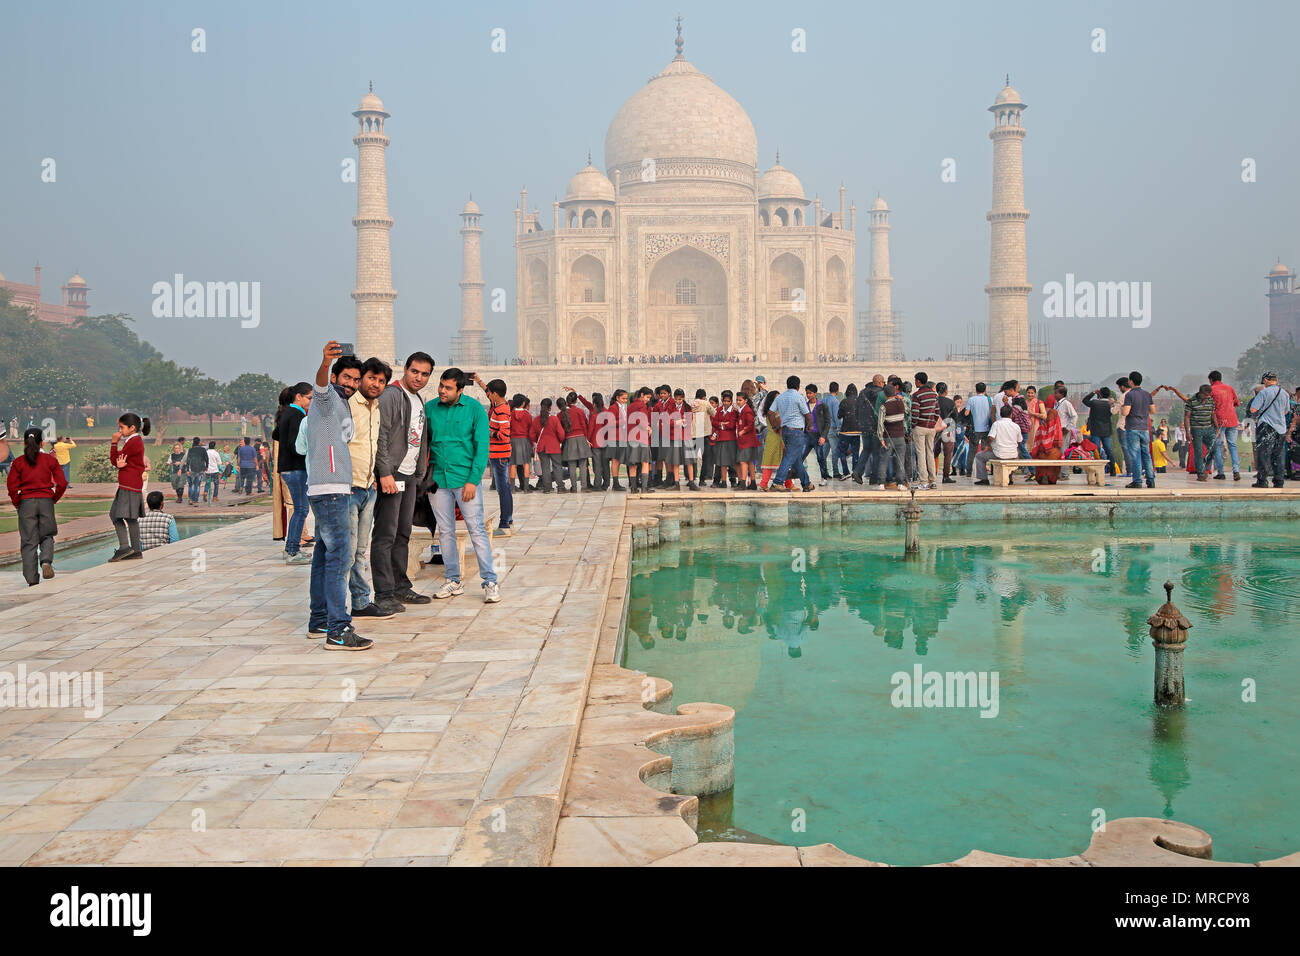 Agra, Inde - le 29 novembre 2015 : célèbre Taj Mahal avec les touristes - un immense mausolée de marbre blanc construit par l'empereur Moghol Shah Jahan Banque D'Images